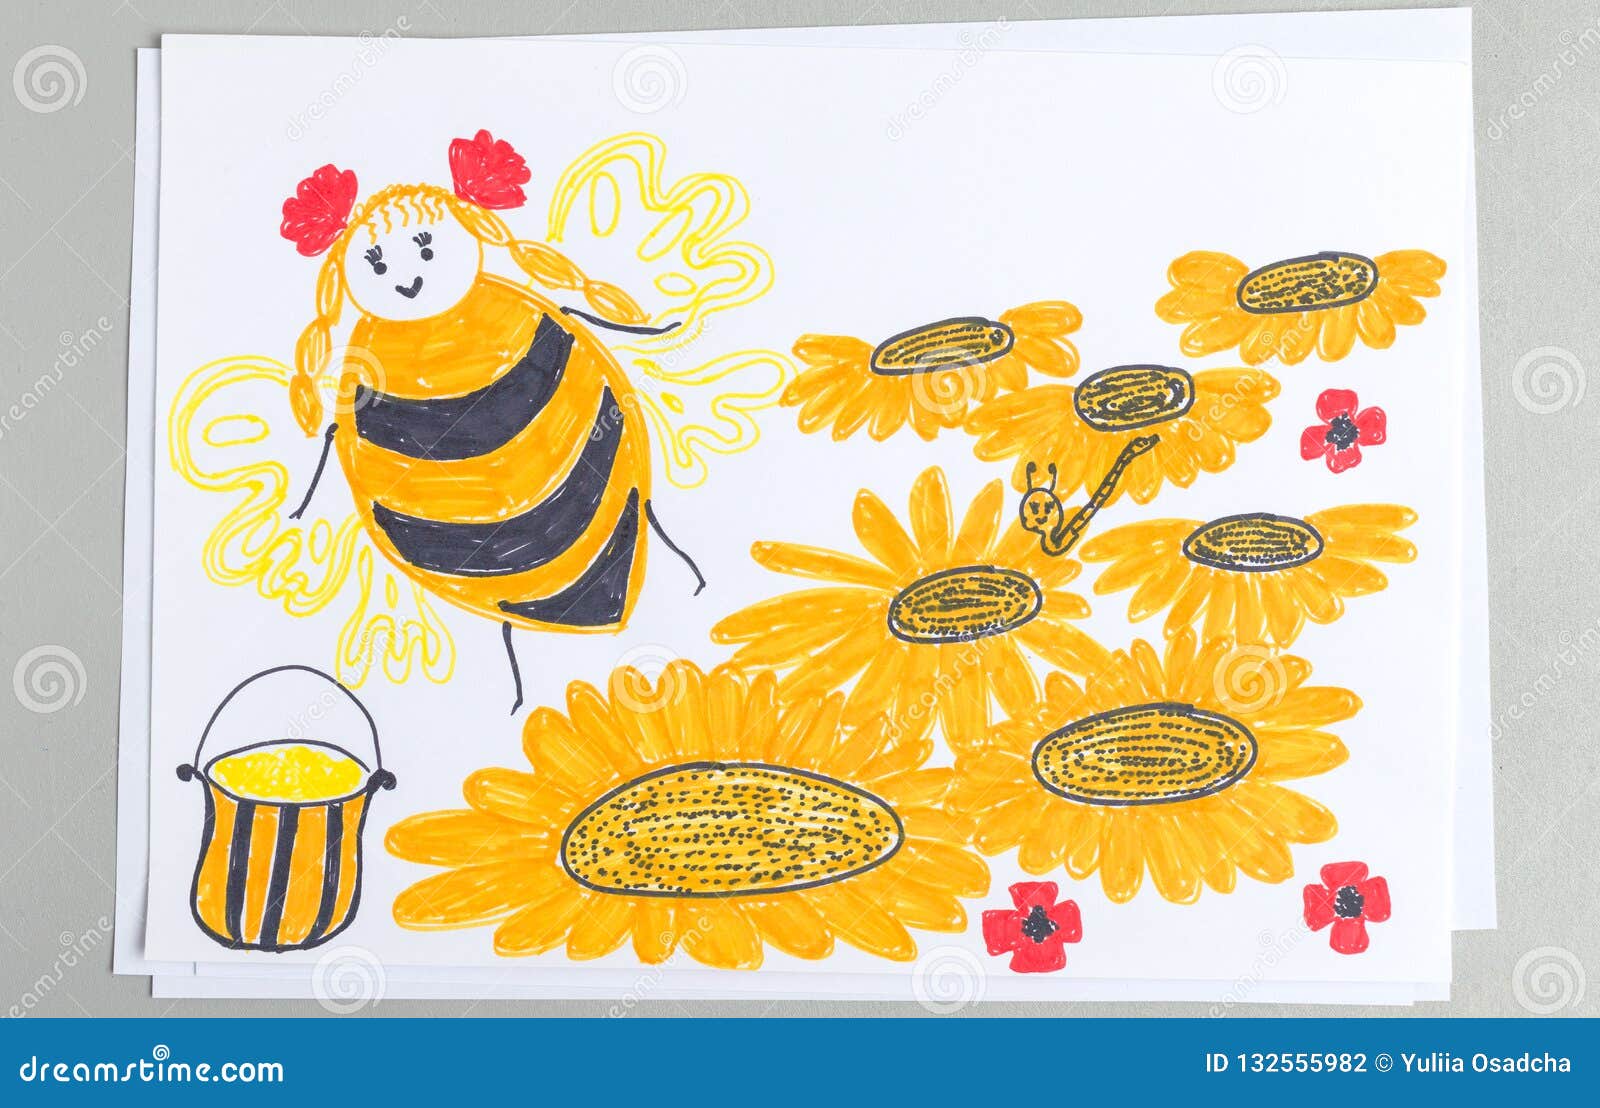 Нектар рисунок. Рисование пчелы собирают нектар. Пчела на цветке рисунок. Пчелы собирают некктаррисунок для детей. Пчела собирает нектар рисунок.